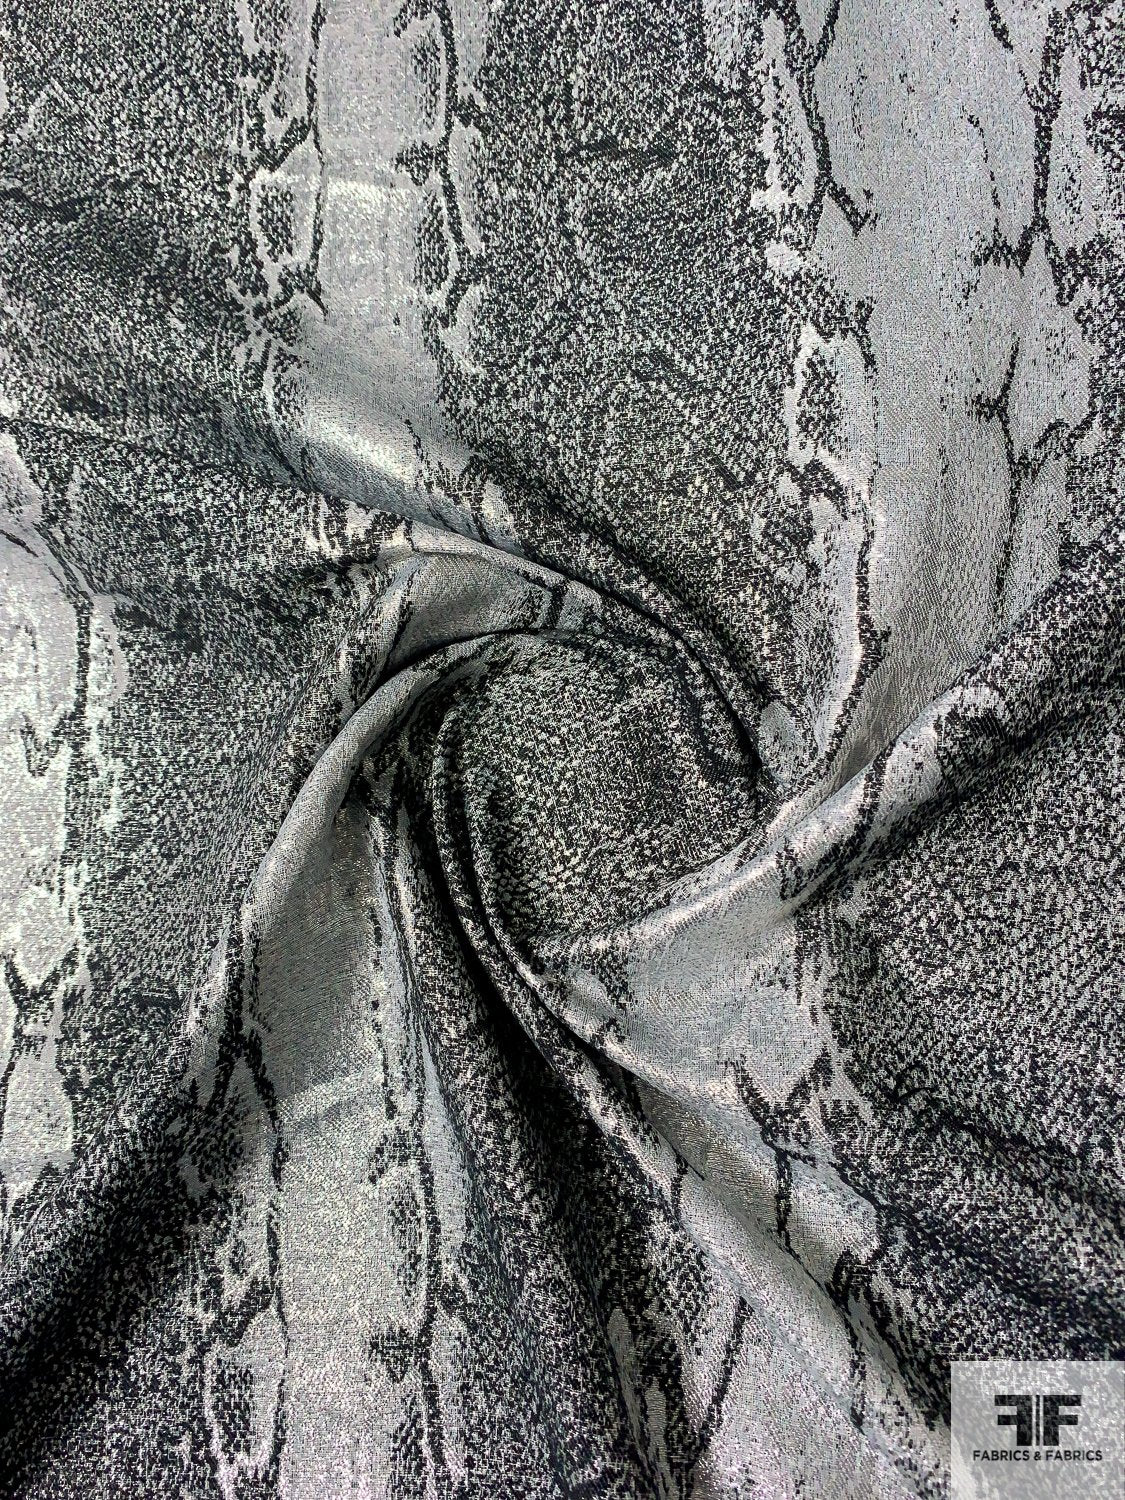 Snakeskin Pattern Reversible Metallic Brocade - Black / Silver